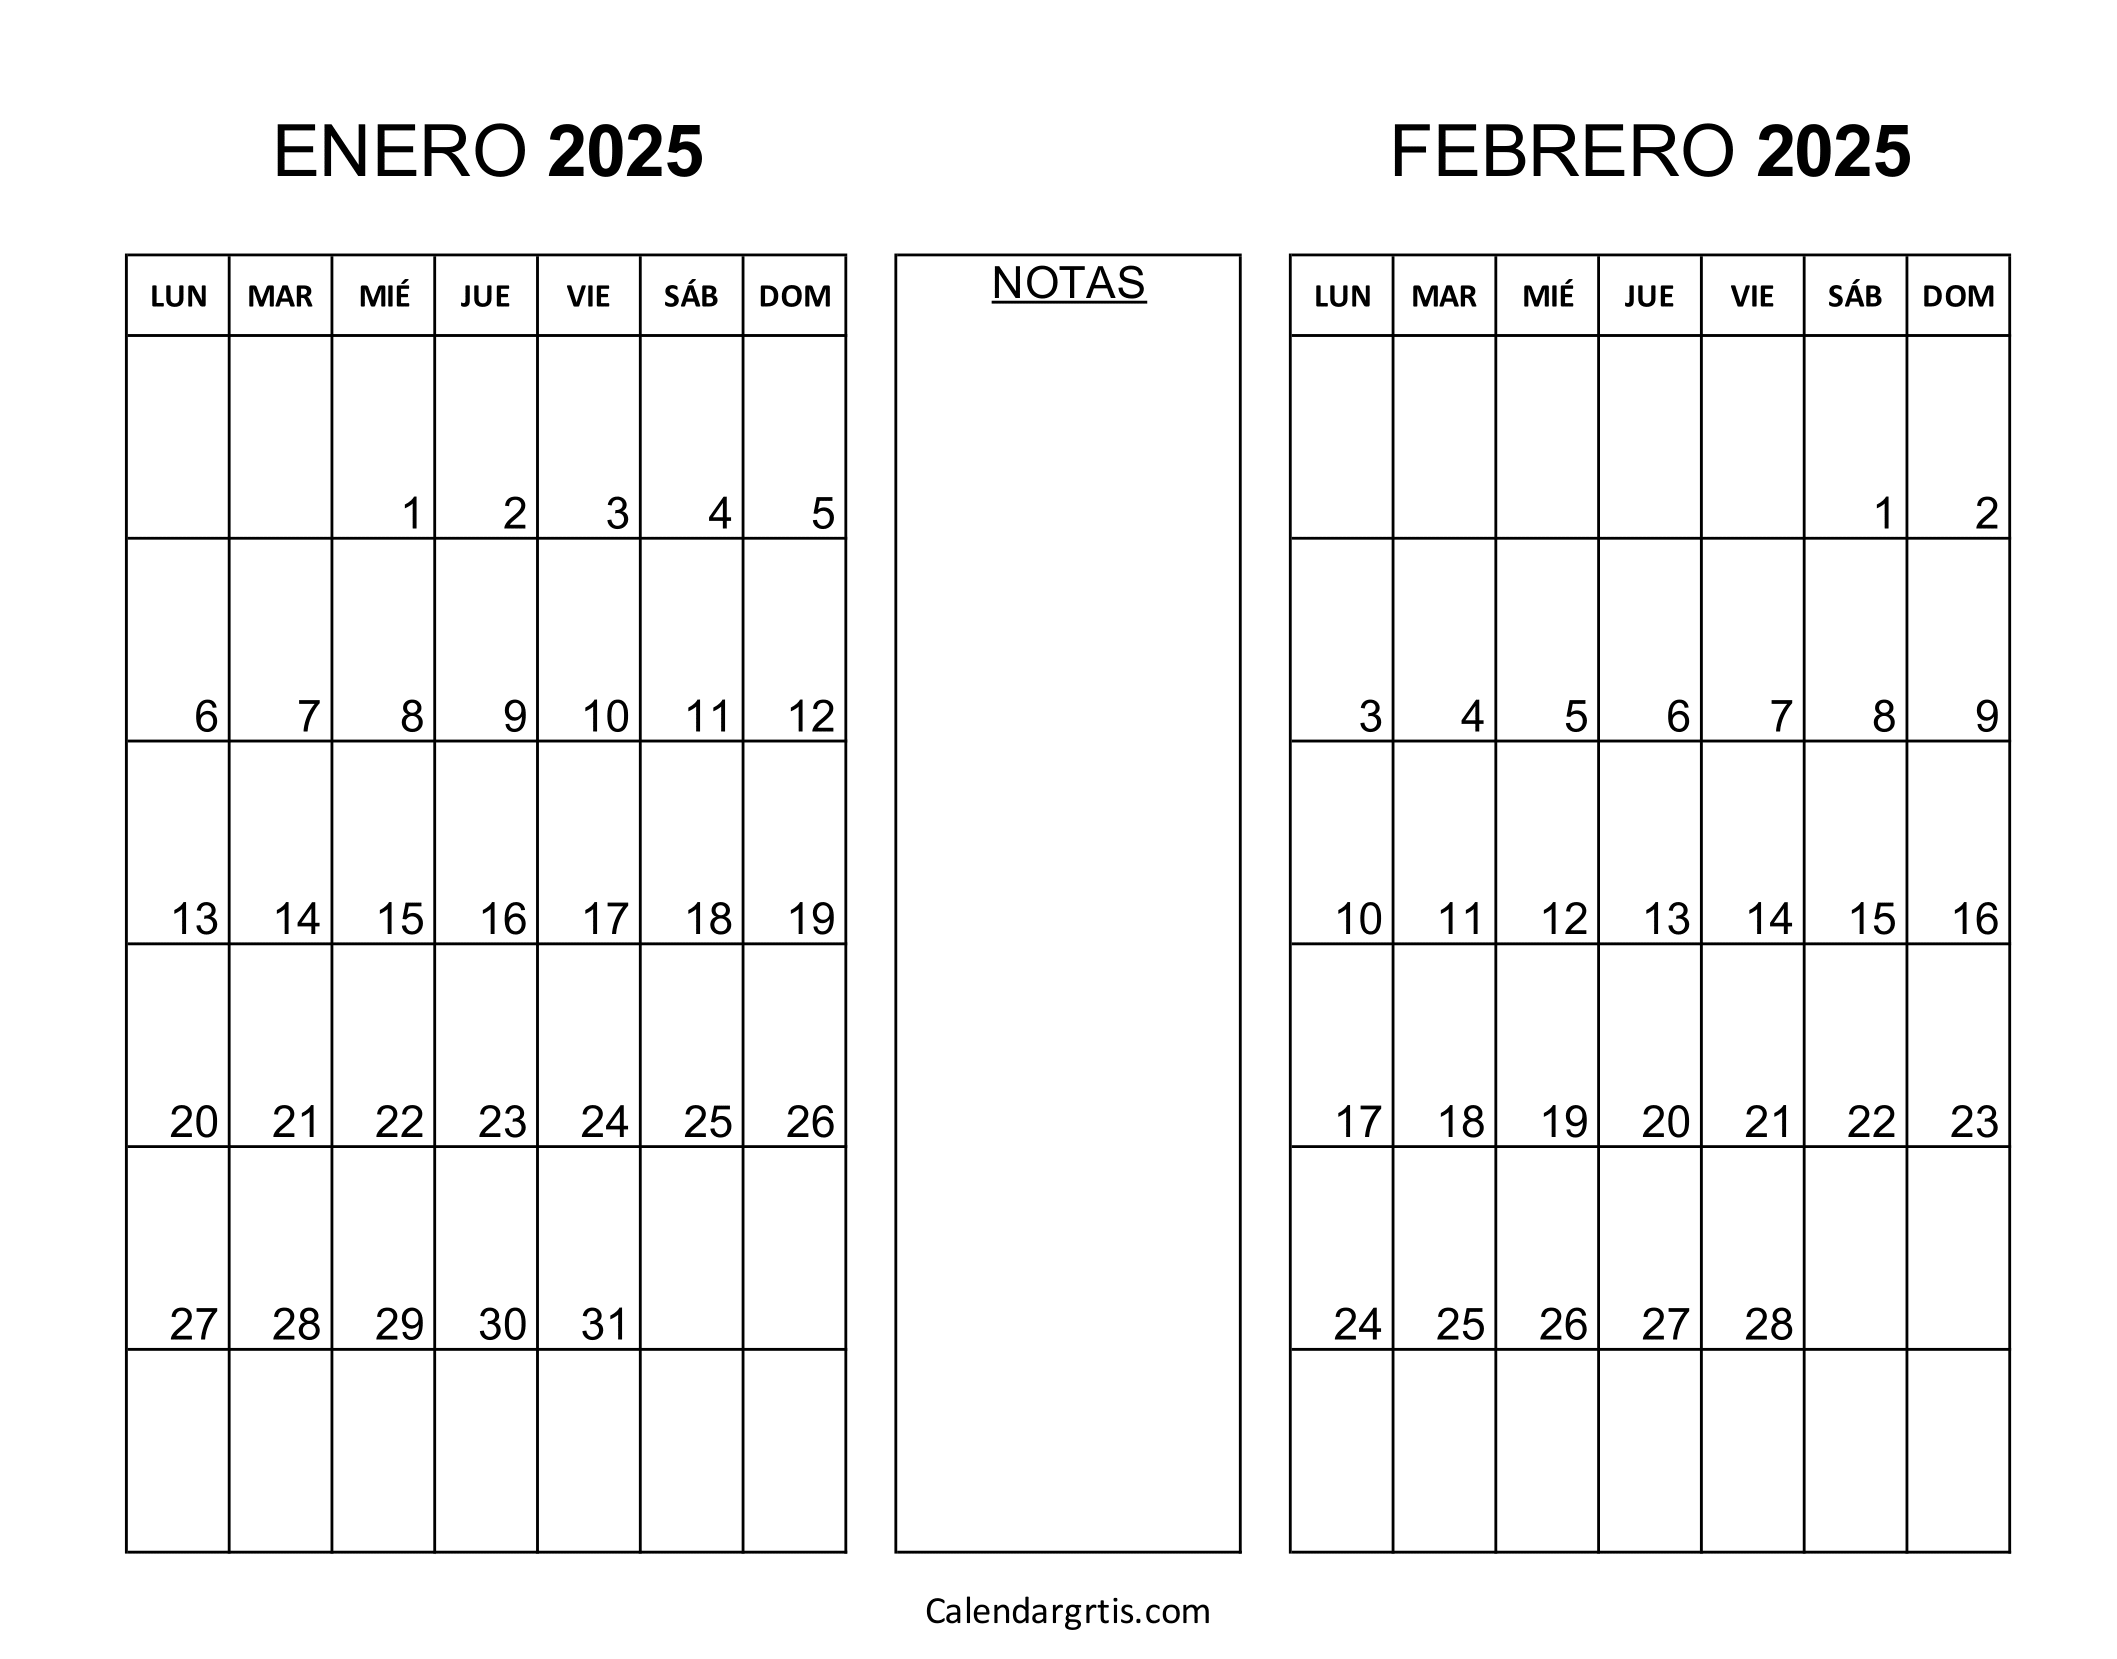 Calendario enero febrero 2025 para imprimir